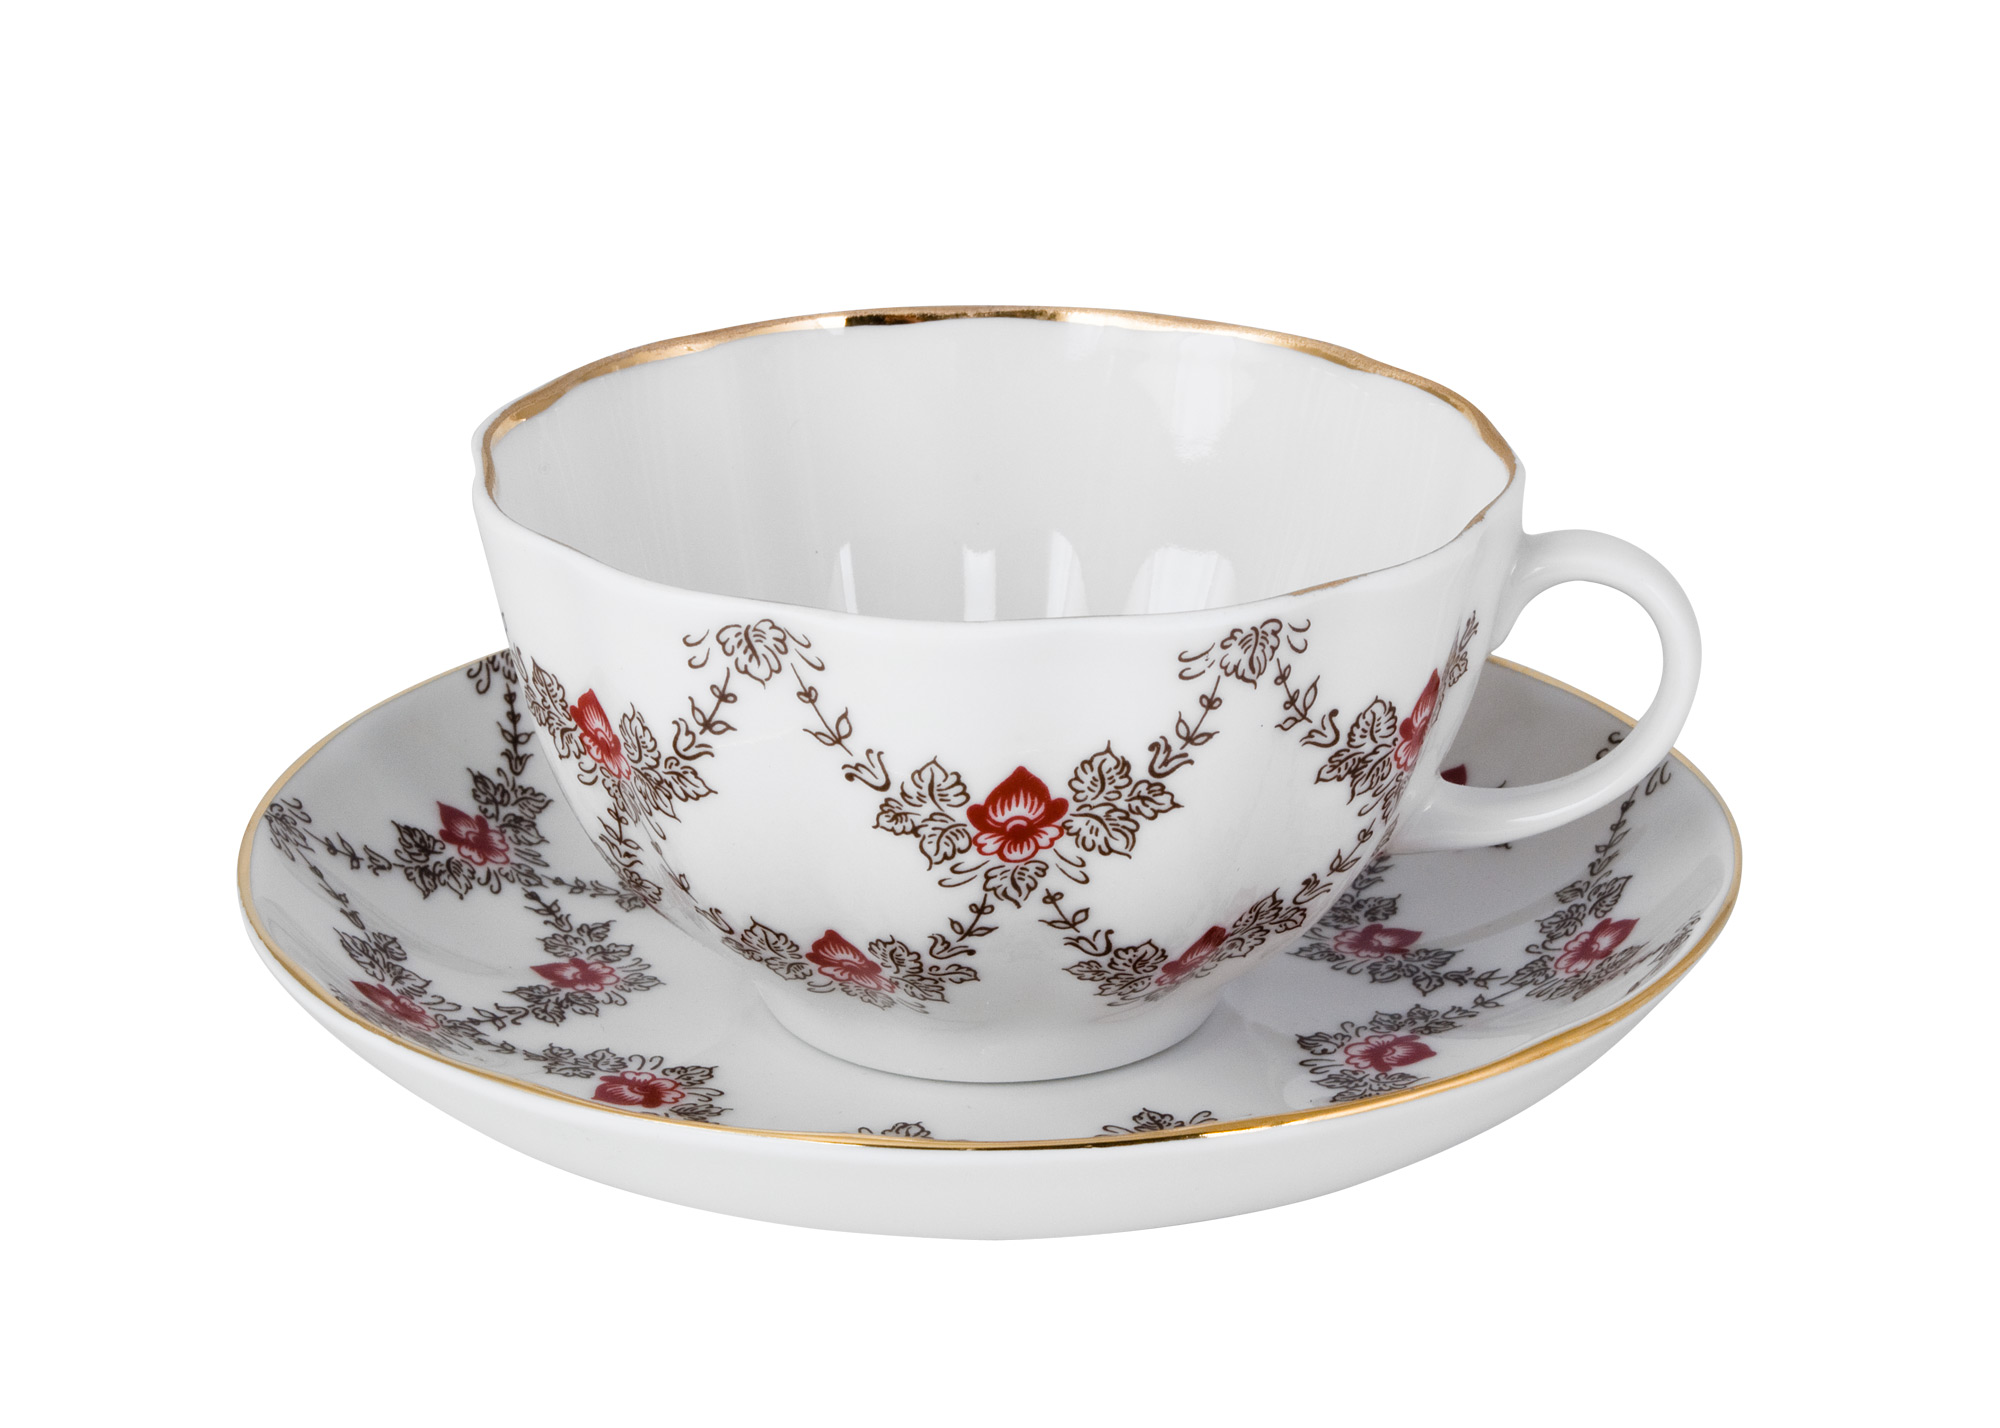 Buy Garlands Tea Cup with Saucer at GoldenCockerel.com